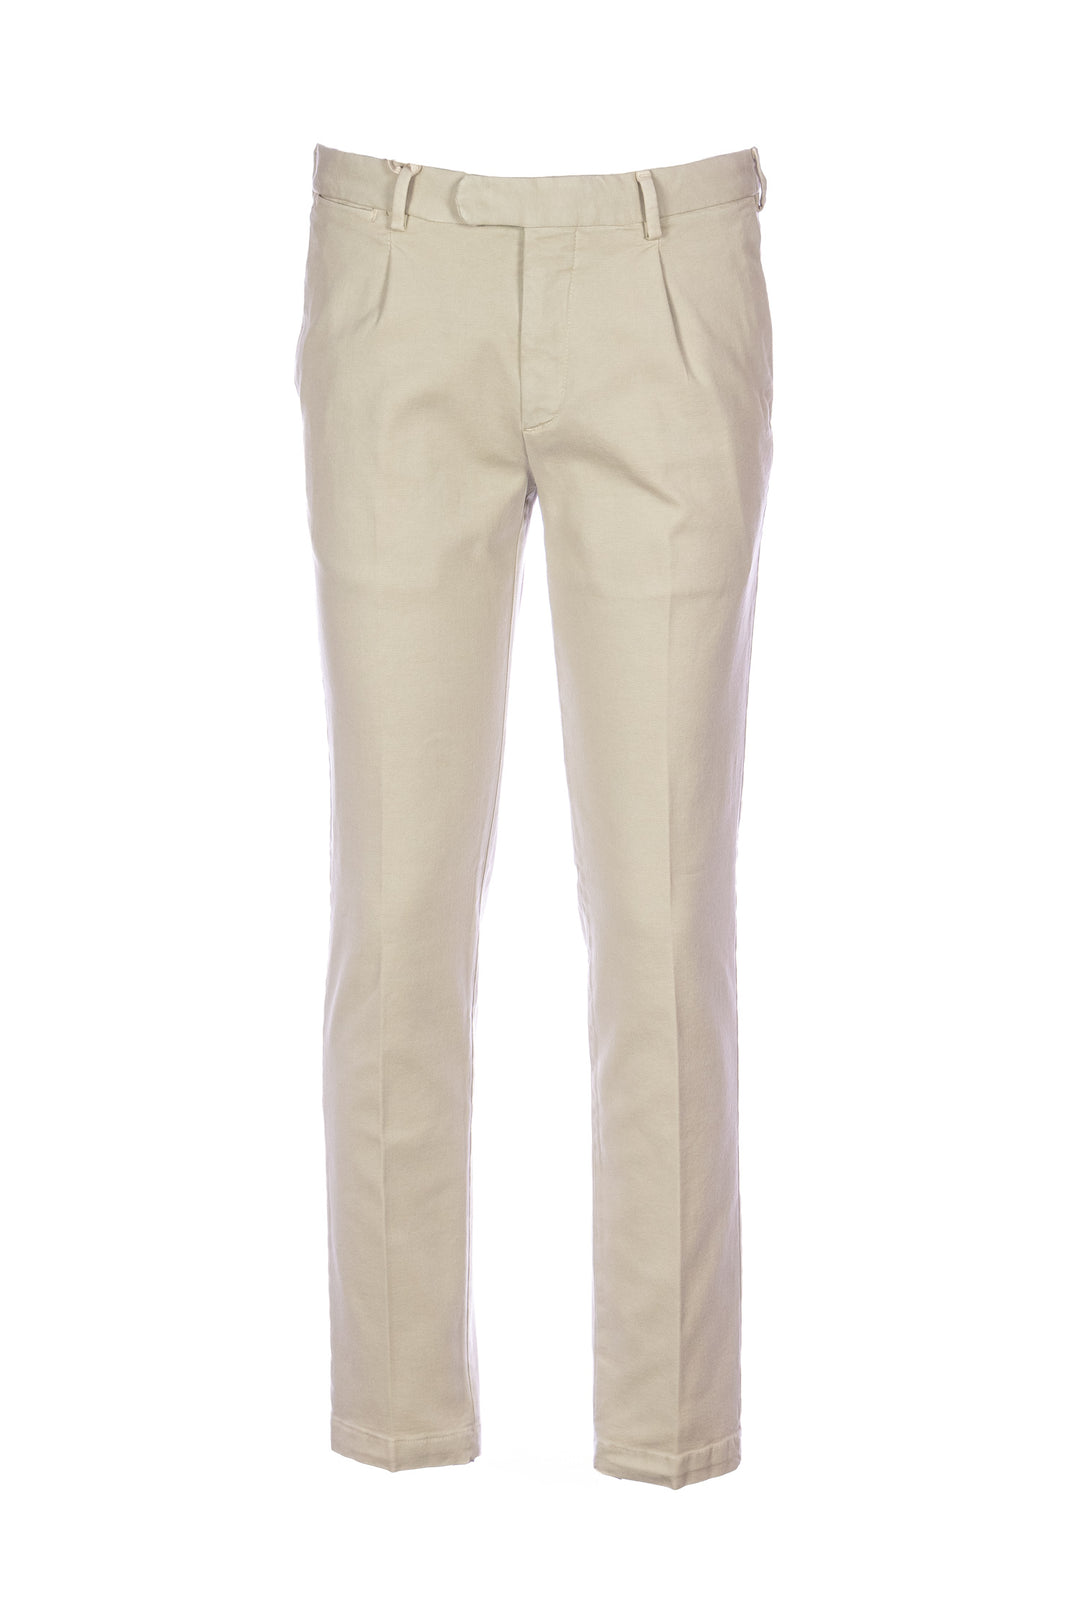 DEVORE Pantalone beige in cotone supima 3-ply con vita elastica - Mancinelli 1954